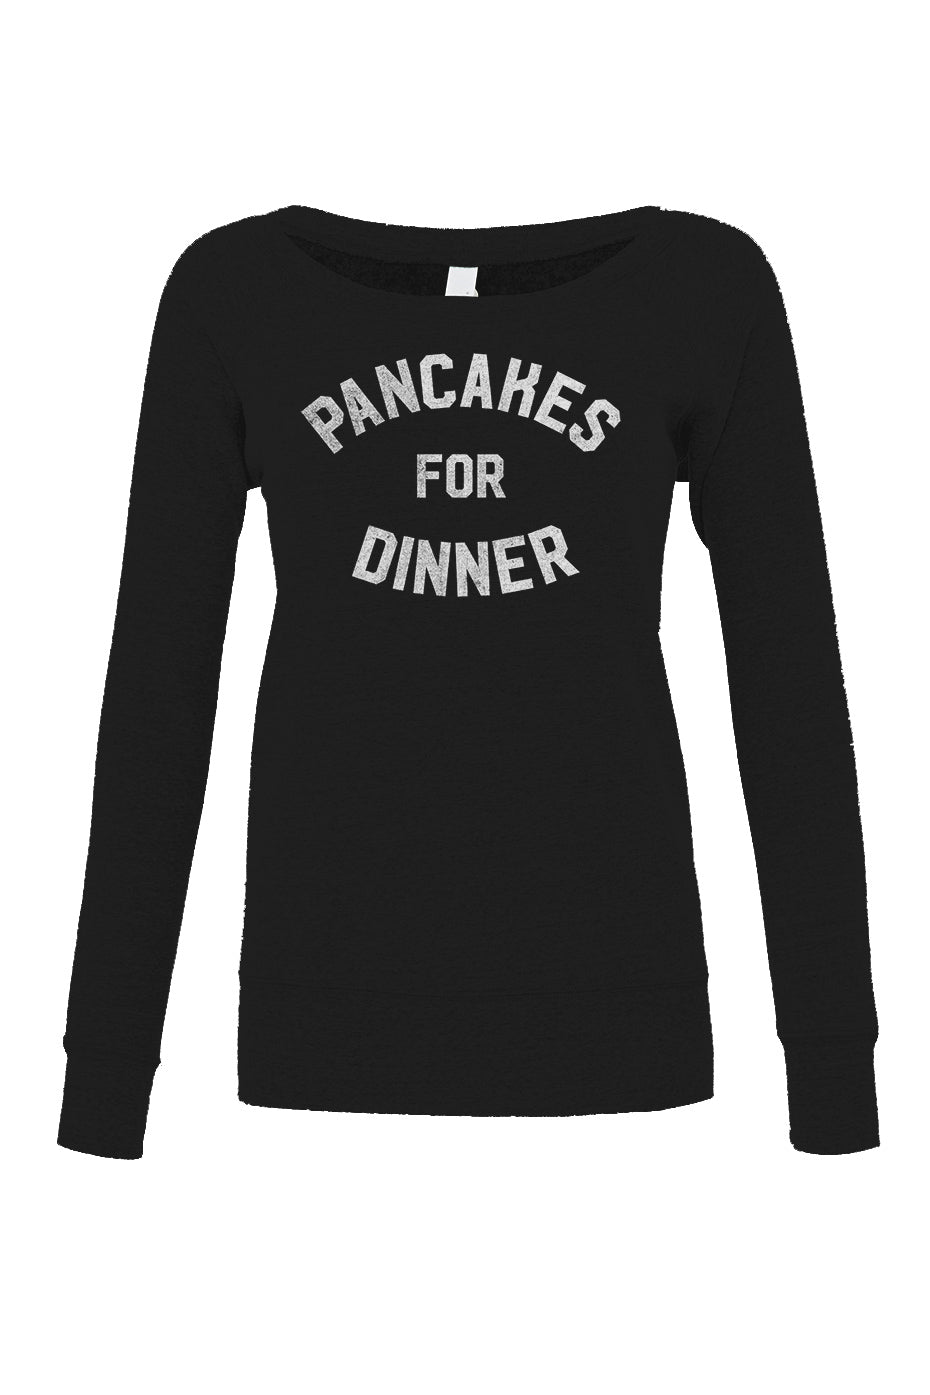 Women's Pancakes for Dinner Scoop Neck Fleece - Breakfast Brunch Foodie